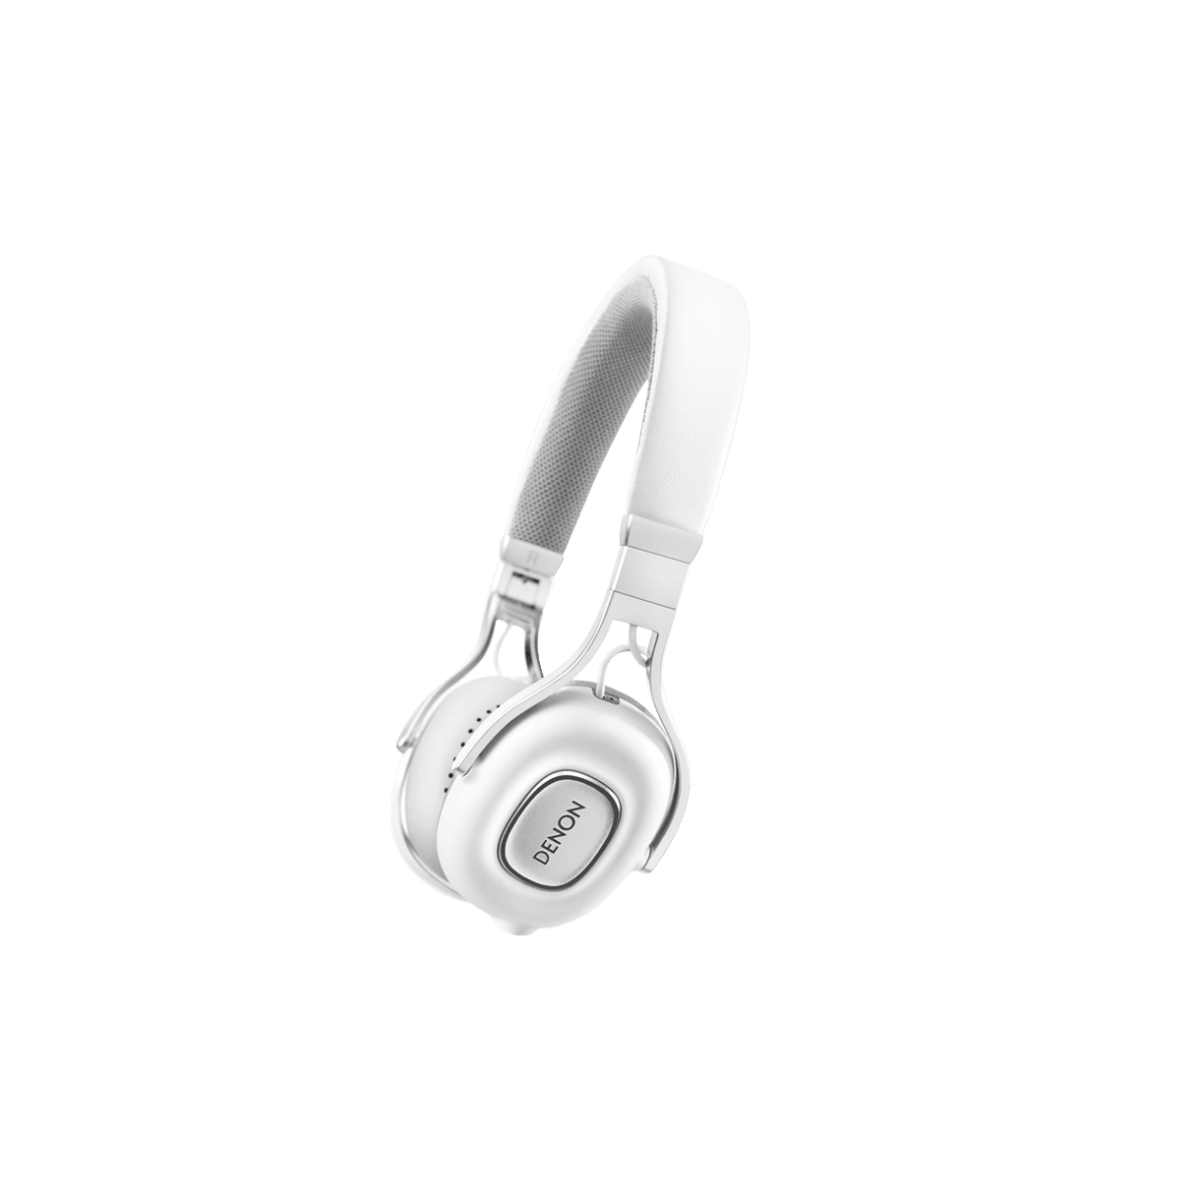 Hier sehen Sie den Artikel AH-MM200 On Ear Headphone white aus der Kategorie Over-Ear. Dieser Artikel ist erhältlich bei cebrands.ch